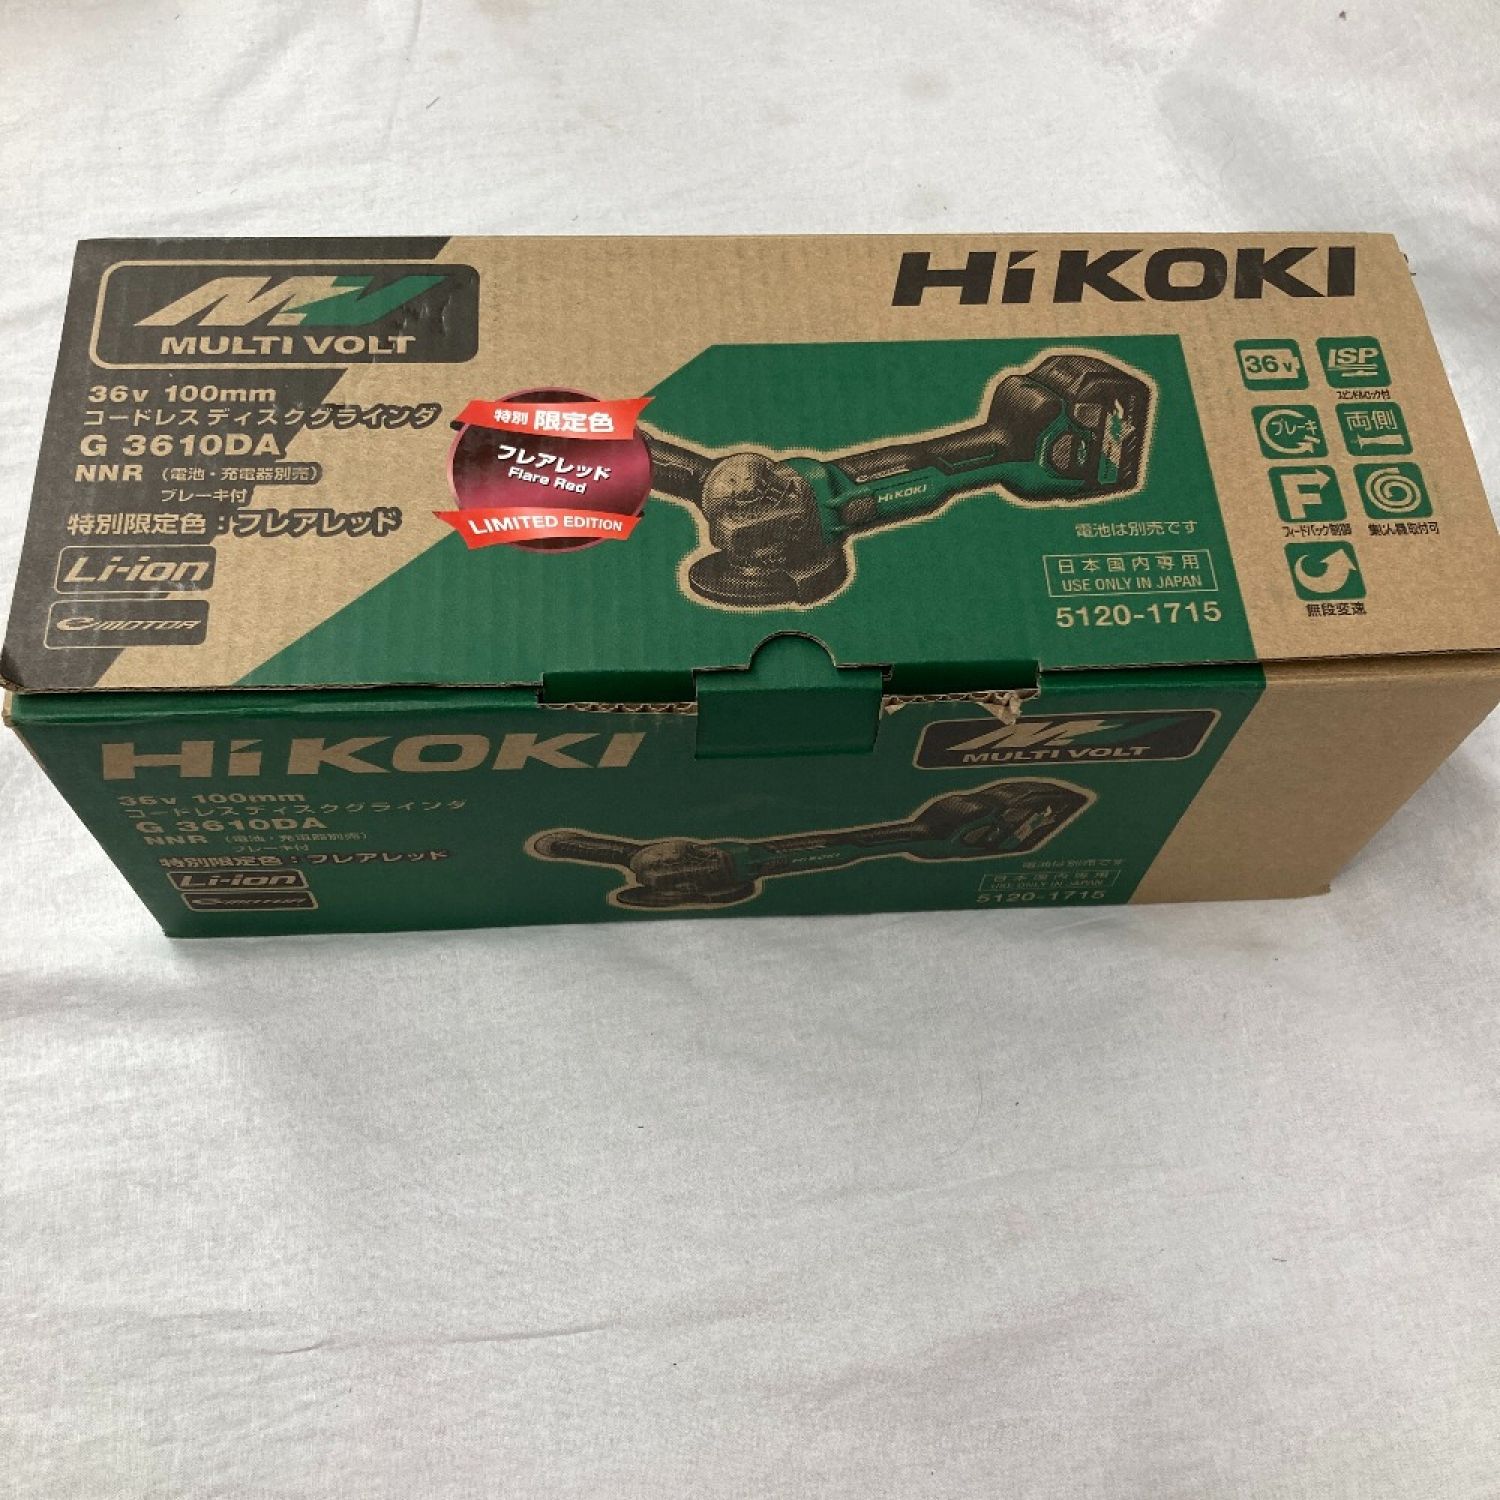 中古】 HiKOKI ハイコーキ ディスクグラインダー G3610DA 特別限定色 